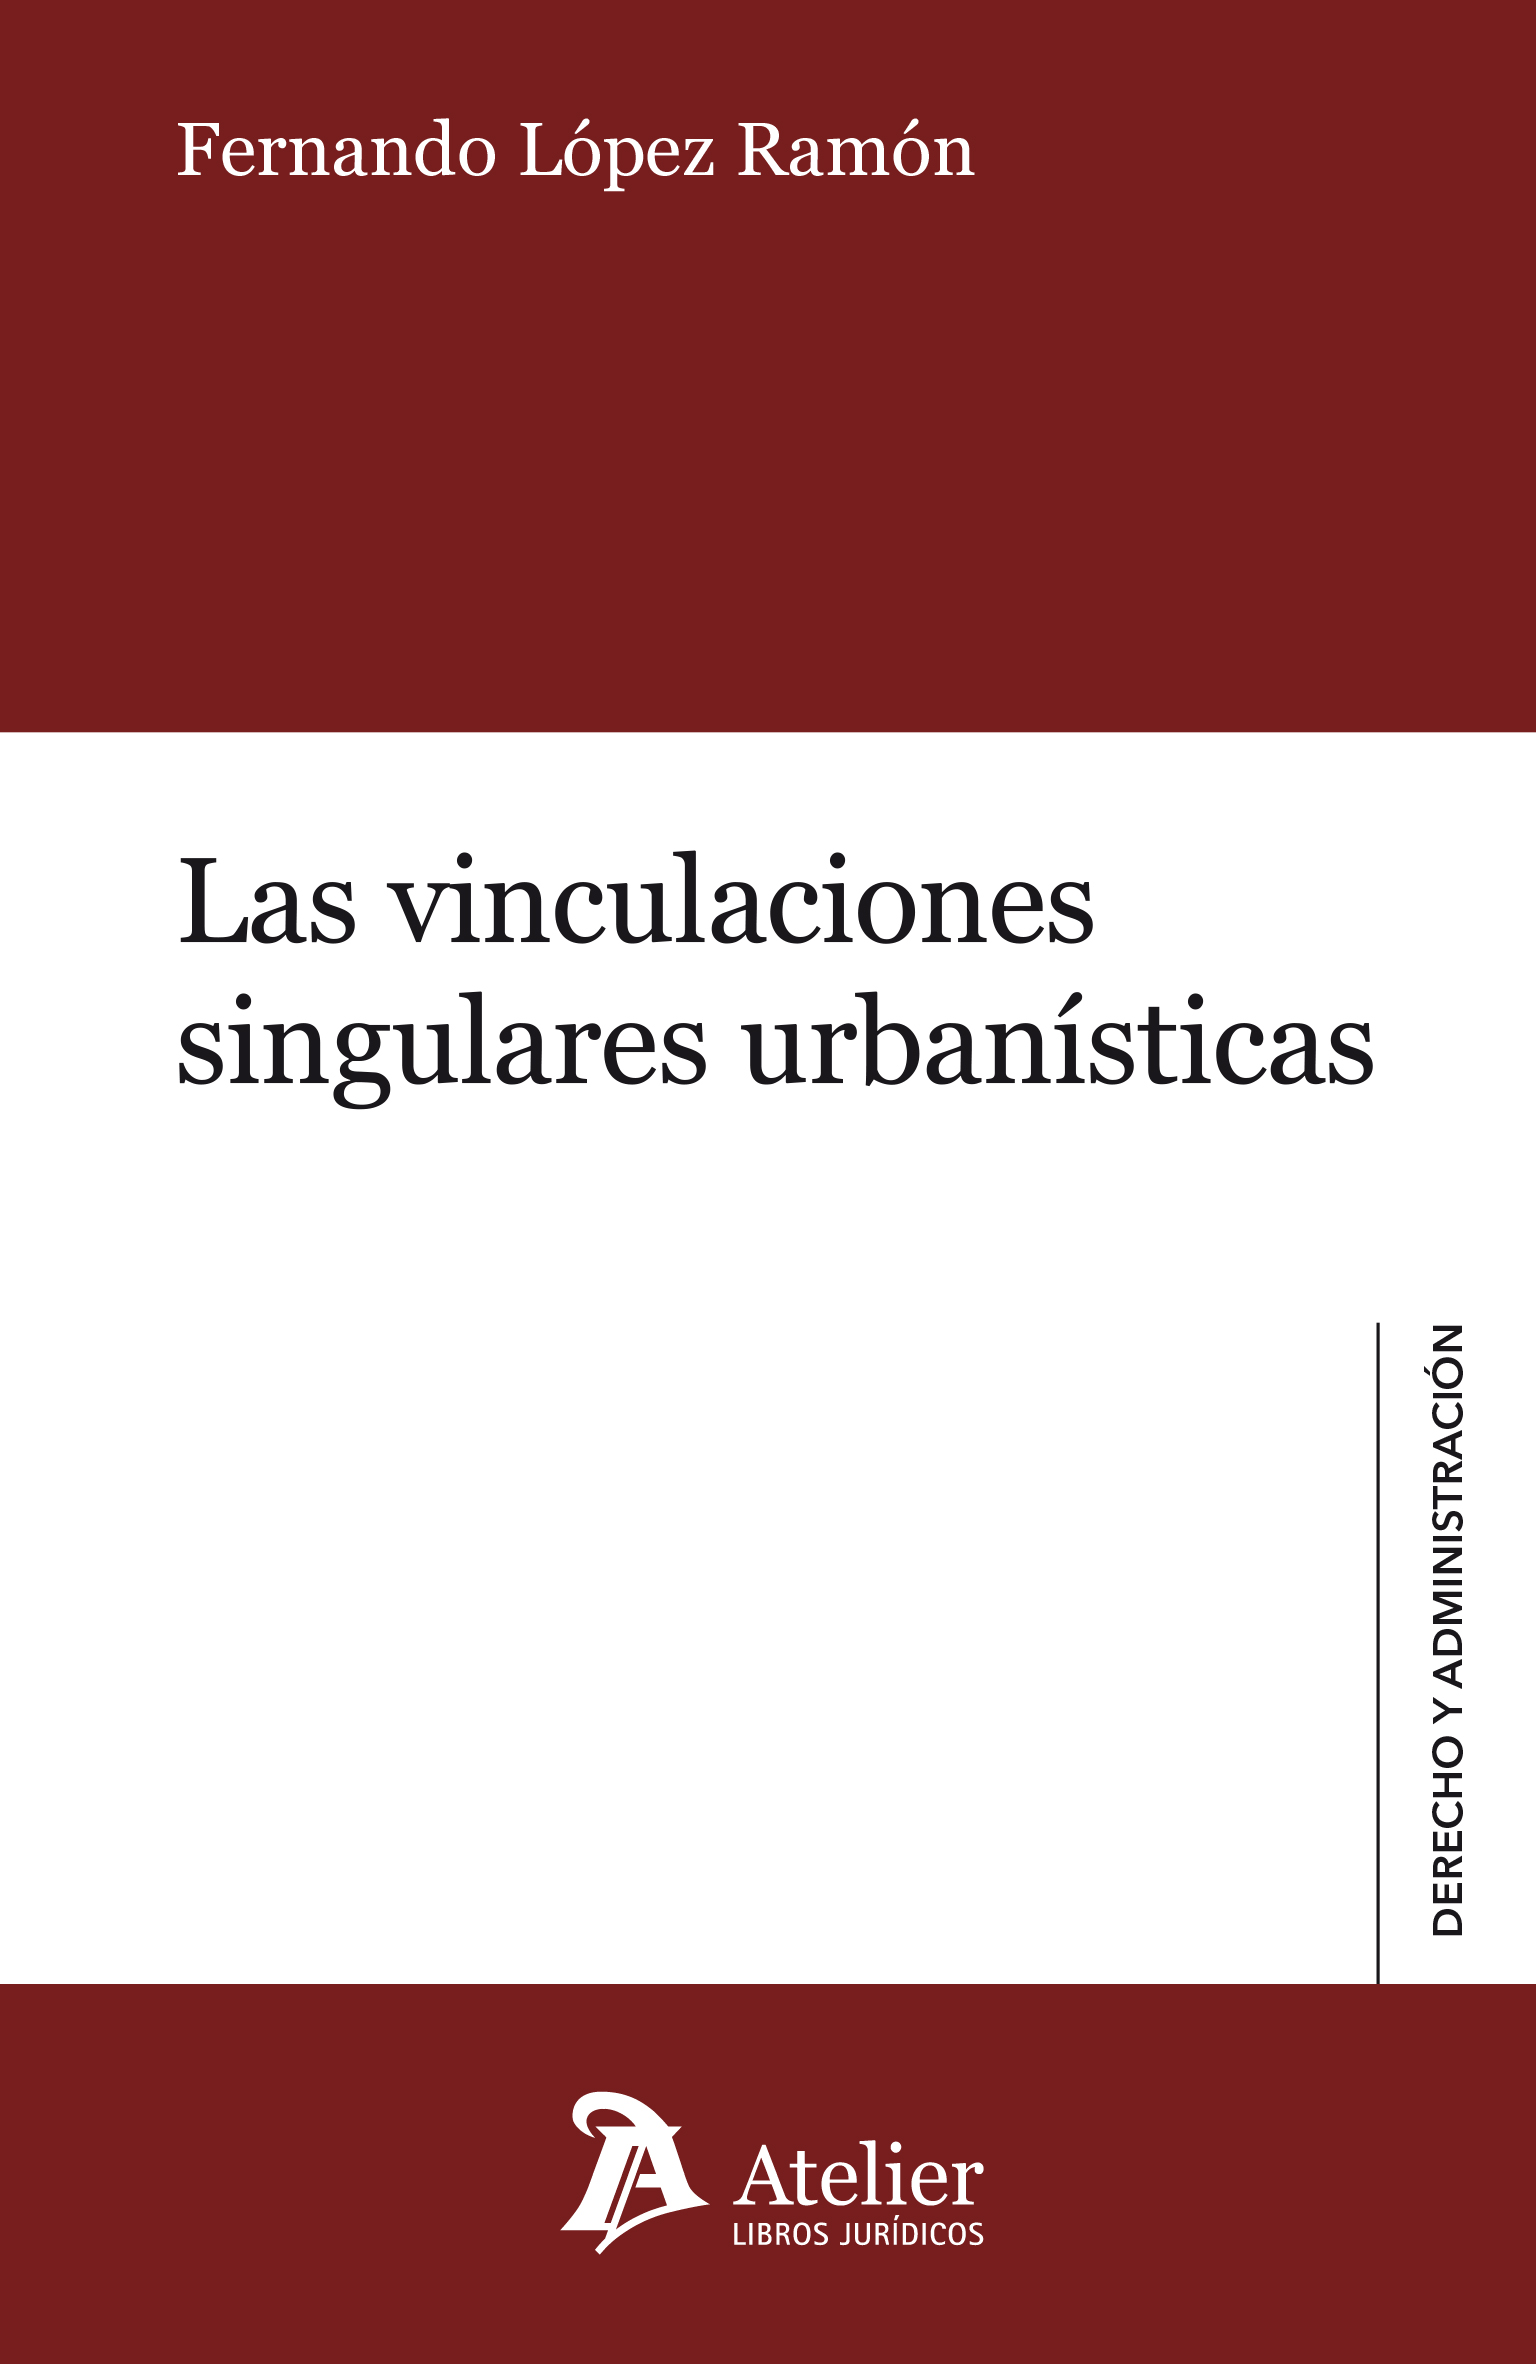 Las vinculaciones singulares urbanísticas